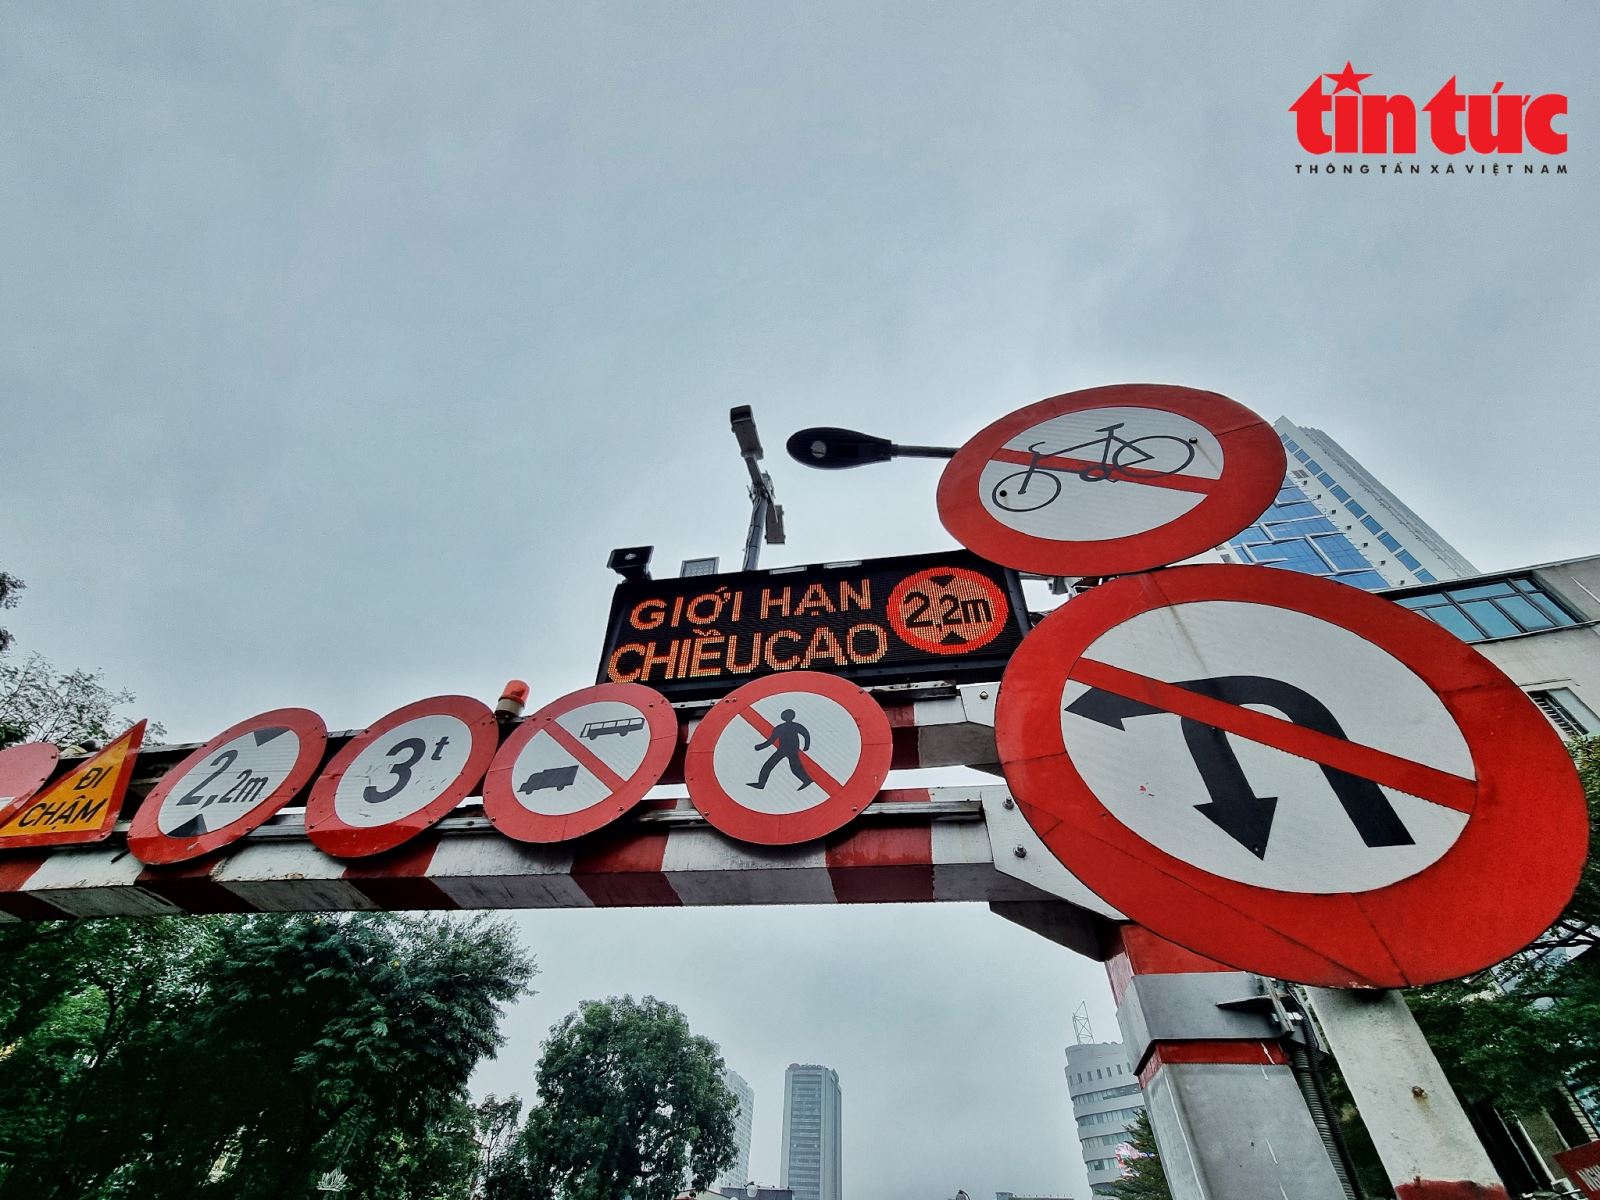 Cận cảnh biển báo thông minh tại các 'điểm đen' giao thông ở Hà Nội - Ảnh 4.